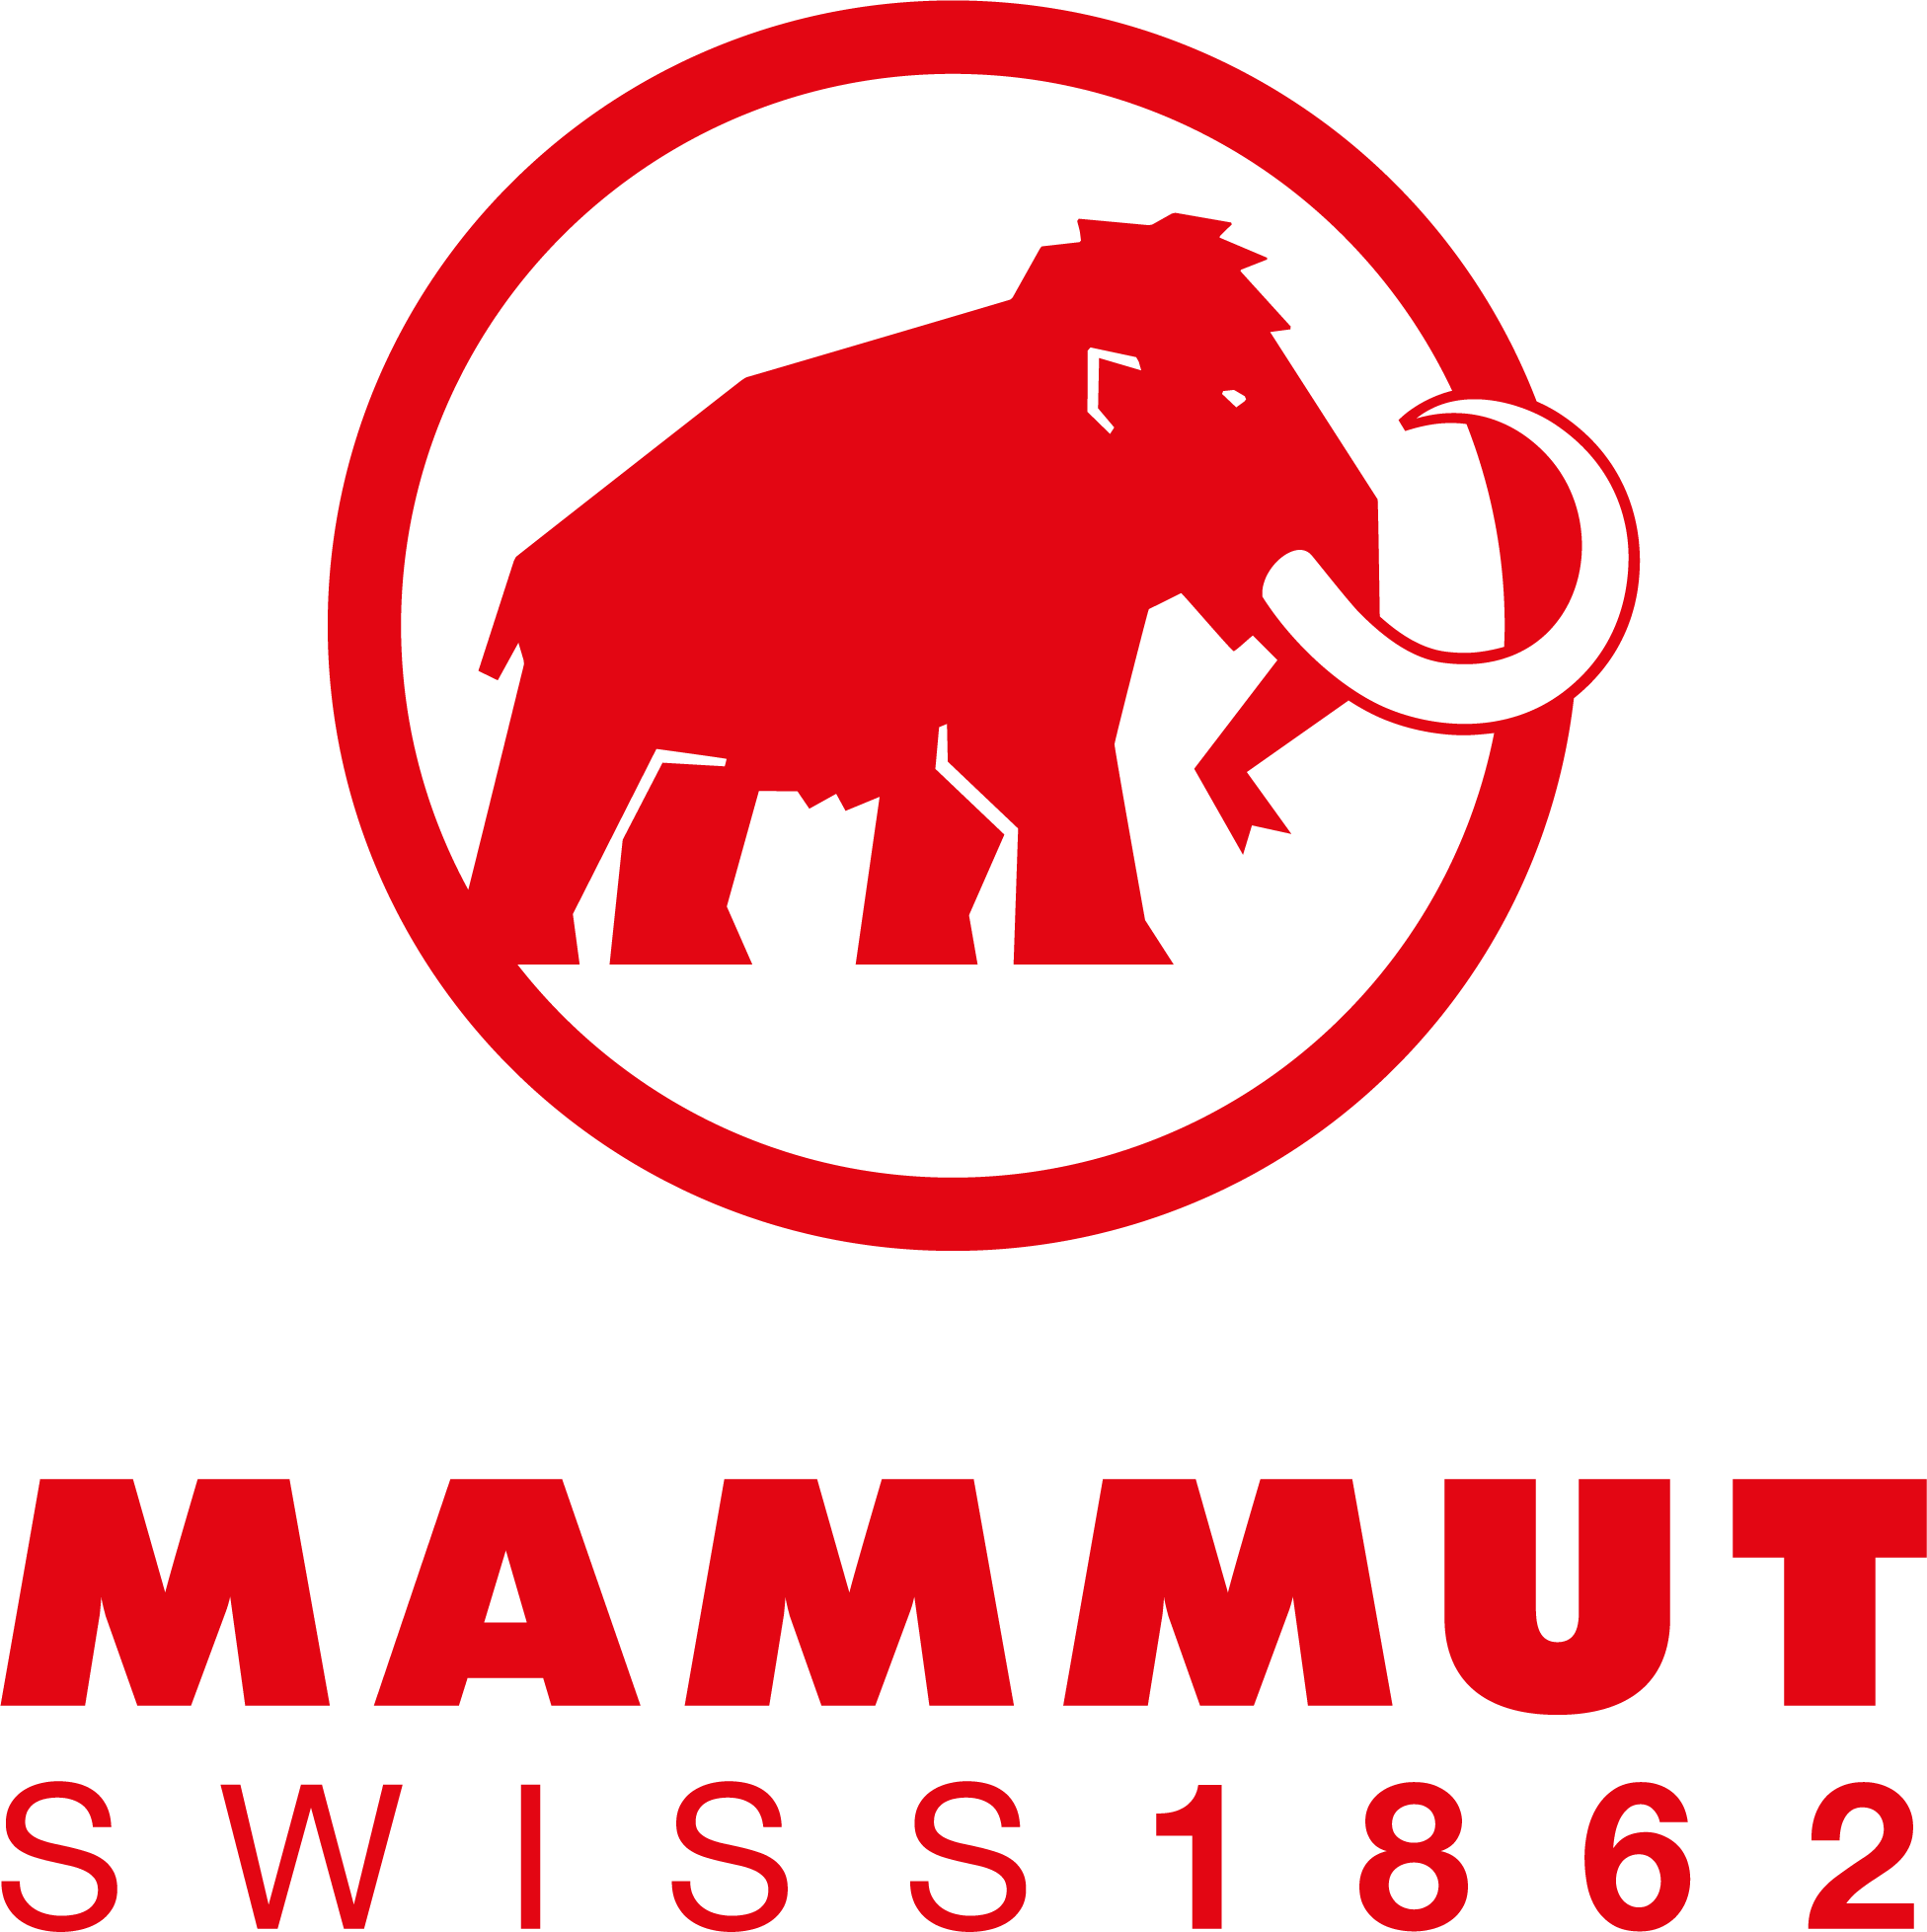 Mammut Ultimate Comfort Softshelljacke Damen dark jade im Online Shop von  SportScheck kaufen